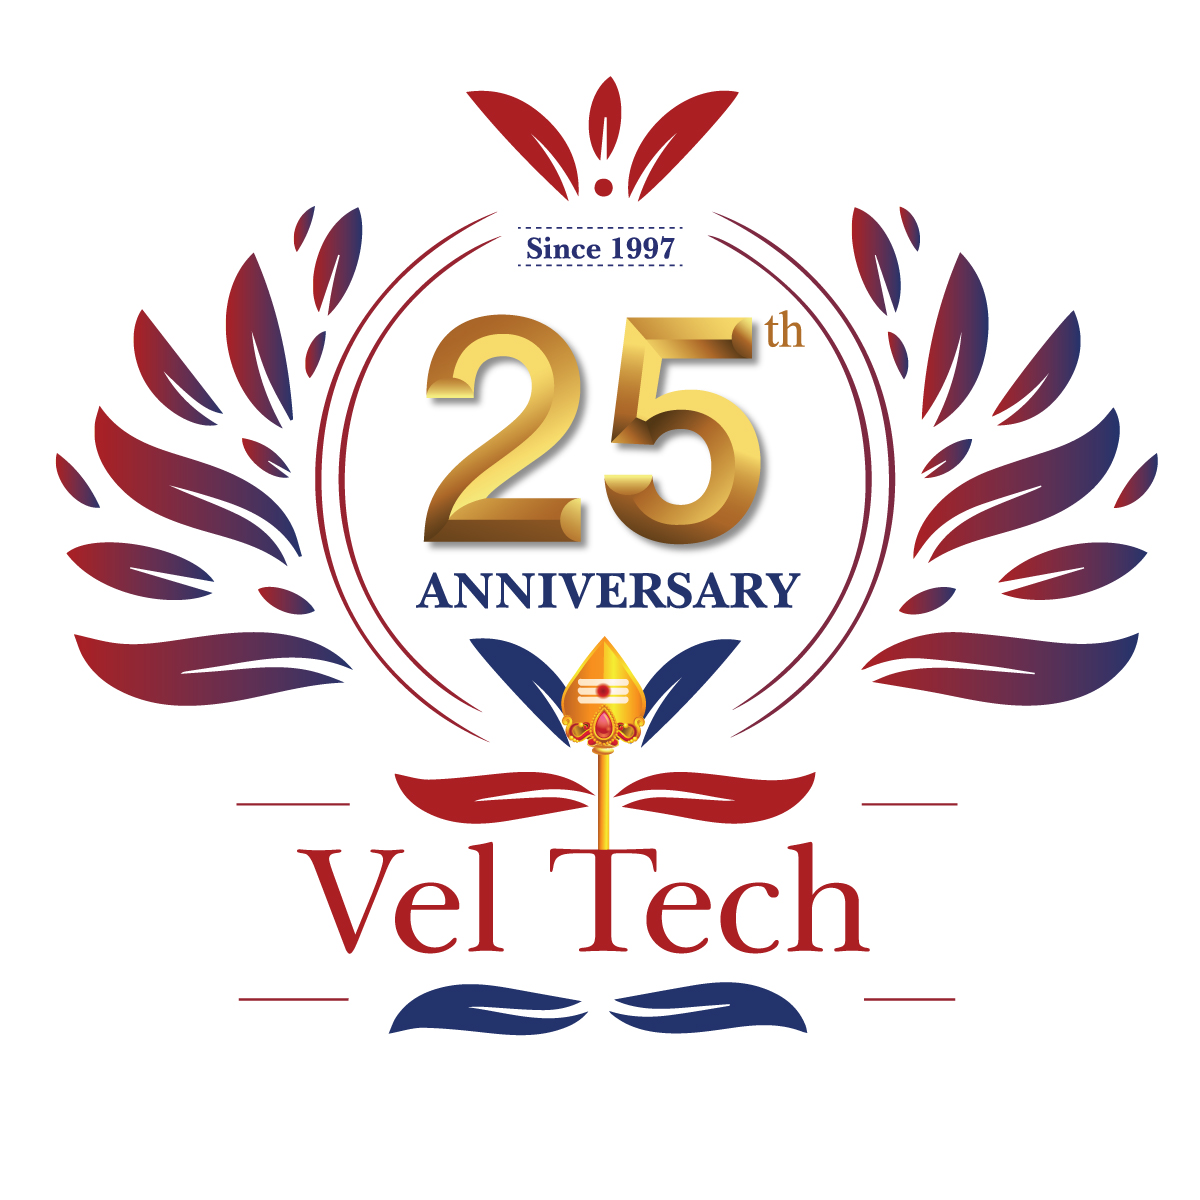 Vel Tech